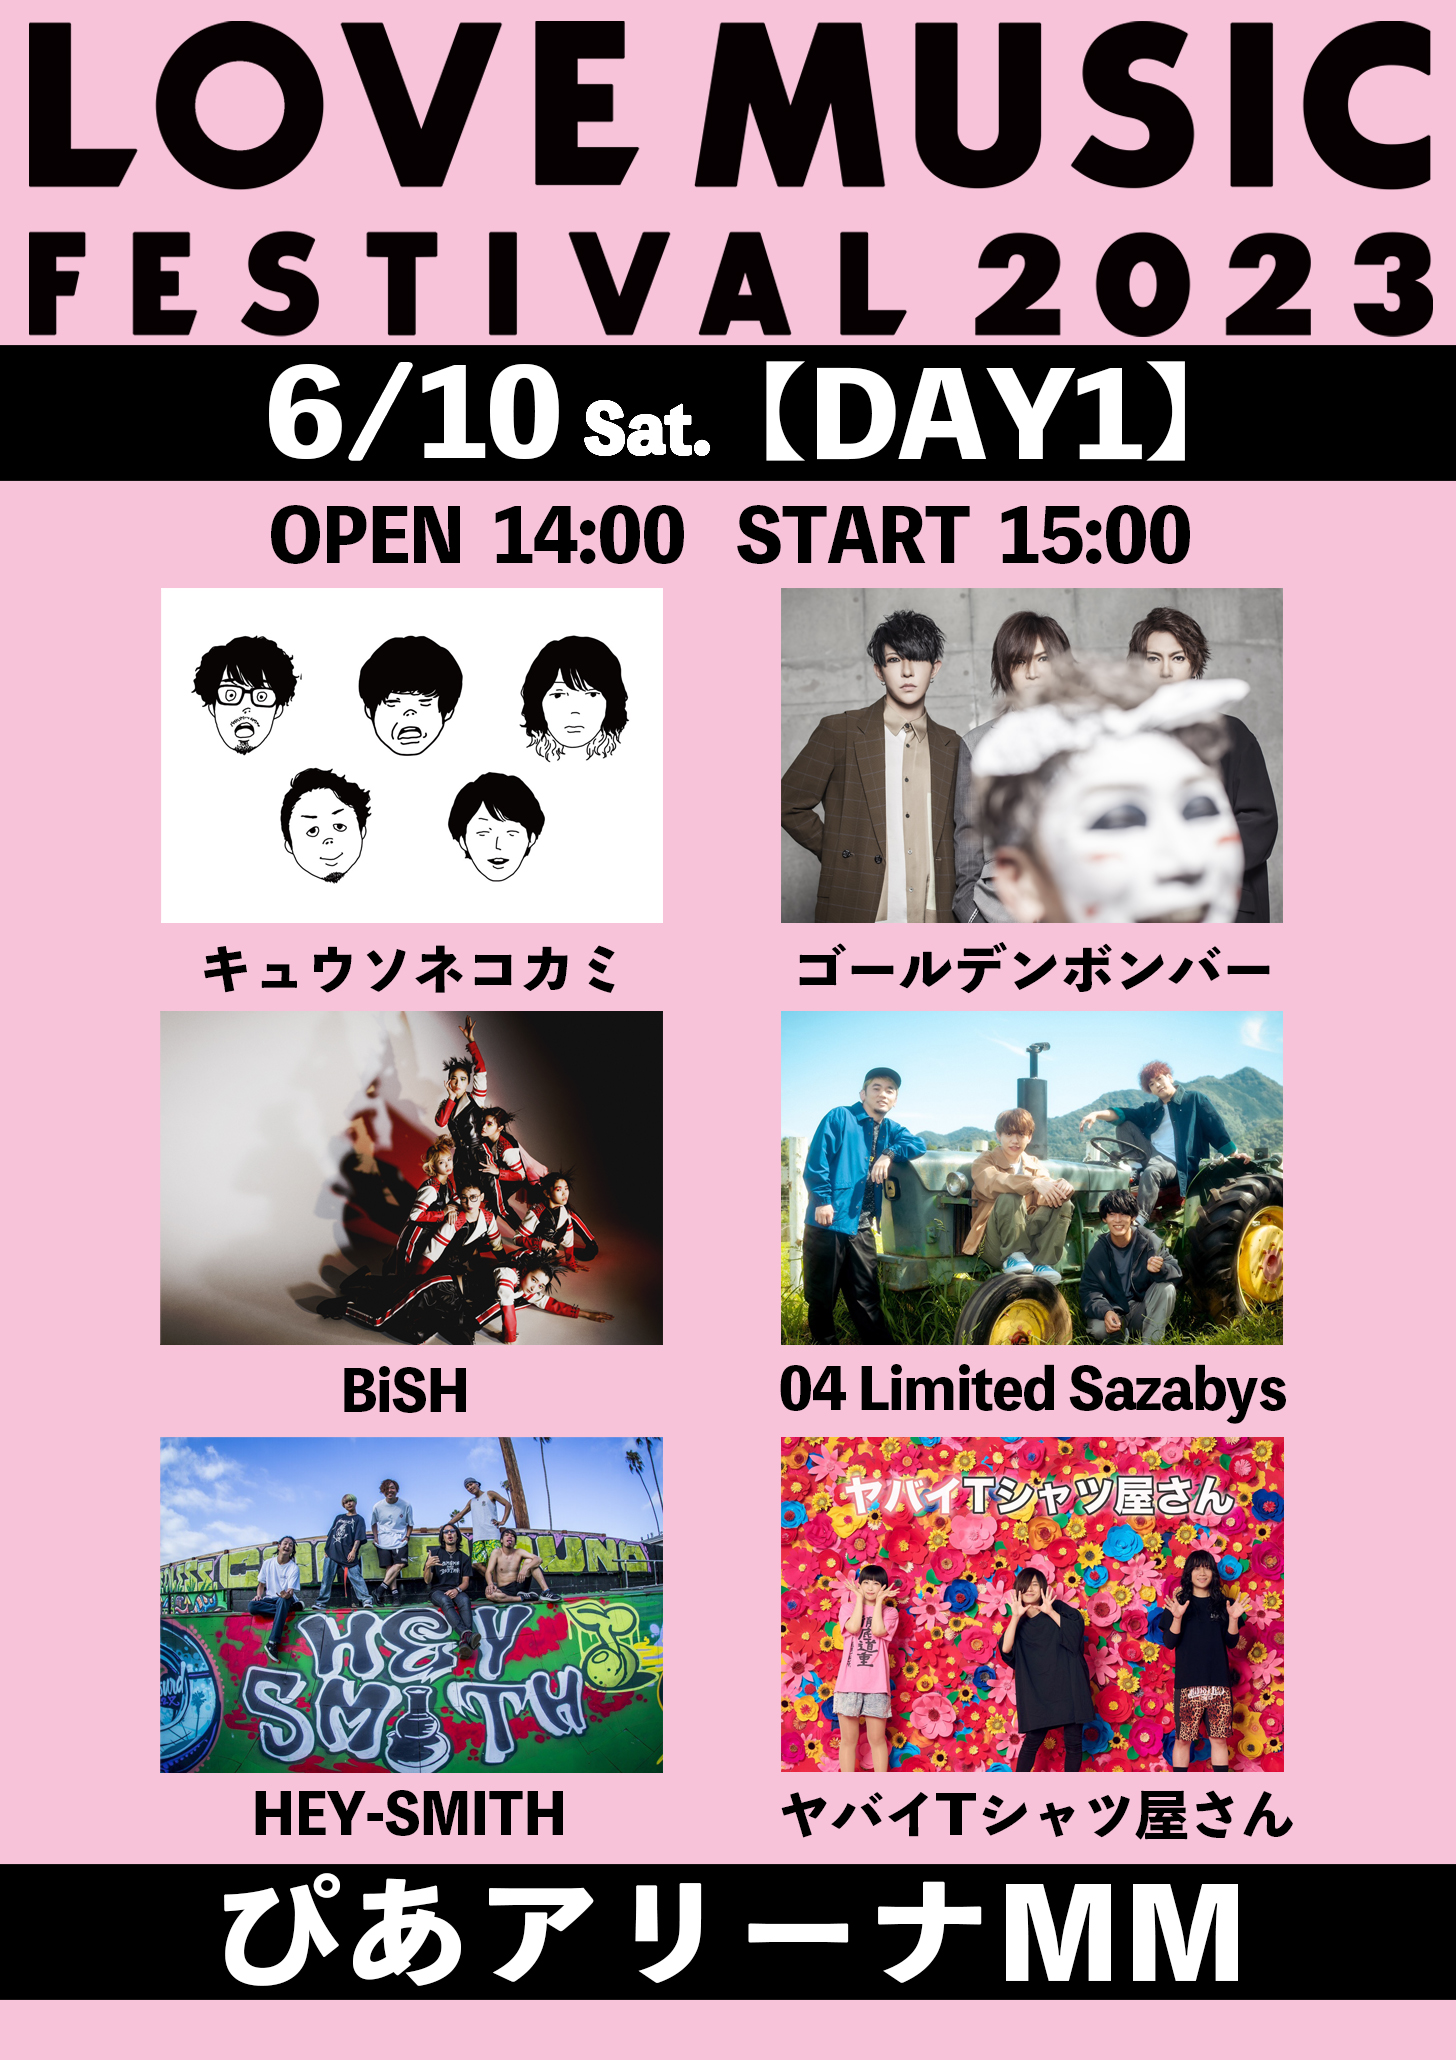 【神奈川】LOVE MUSIC FESTIVAL 2023 (ぴあアリーナMM)